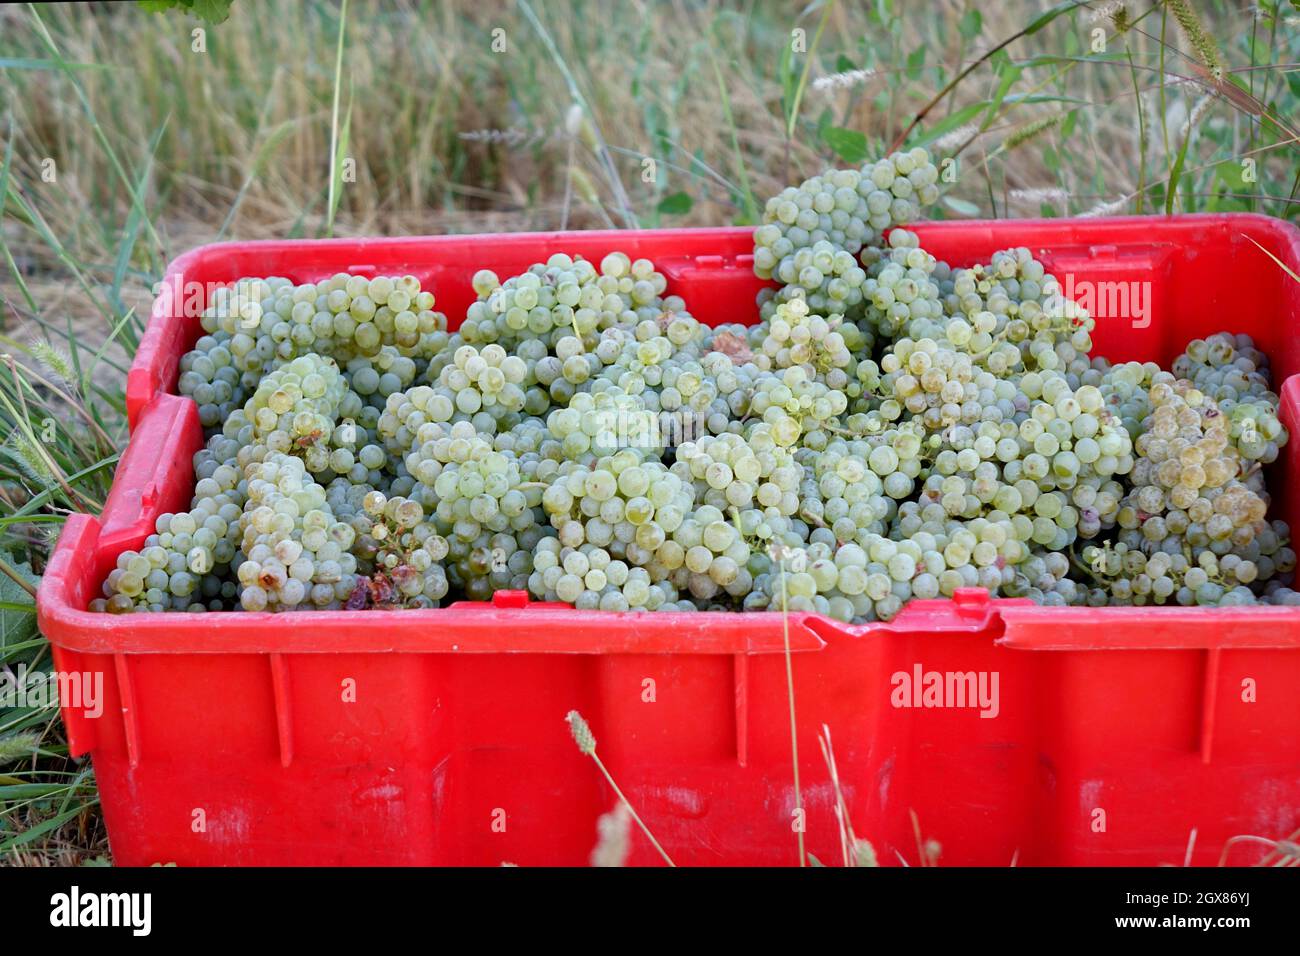 Le uve Sauvignon blanc sono state coltivate con successo nelle regioni del wne in tutto il mondo. La regione vinicola del lago Chelan è ben nota per il lungo mare in crescita Foto Stock